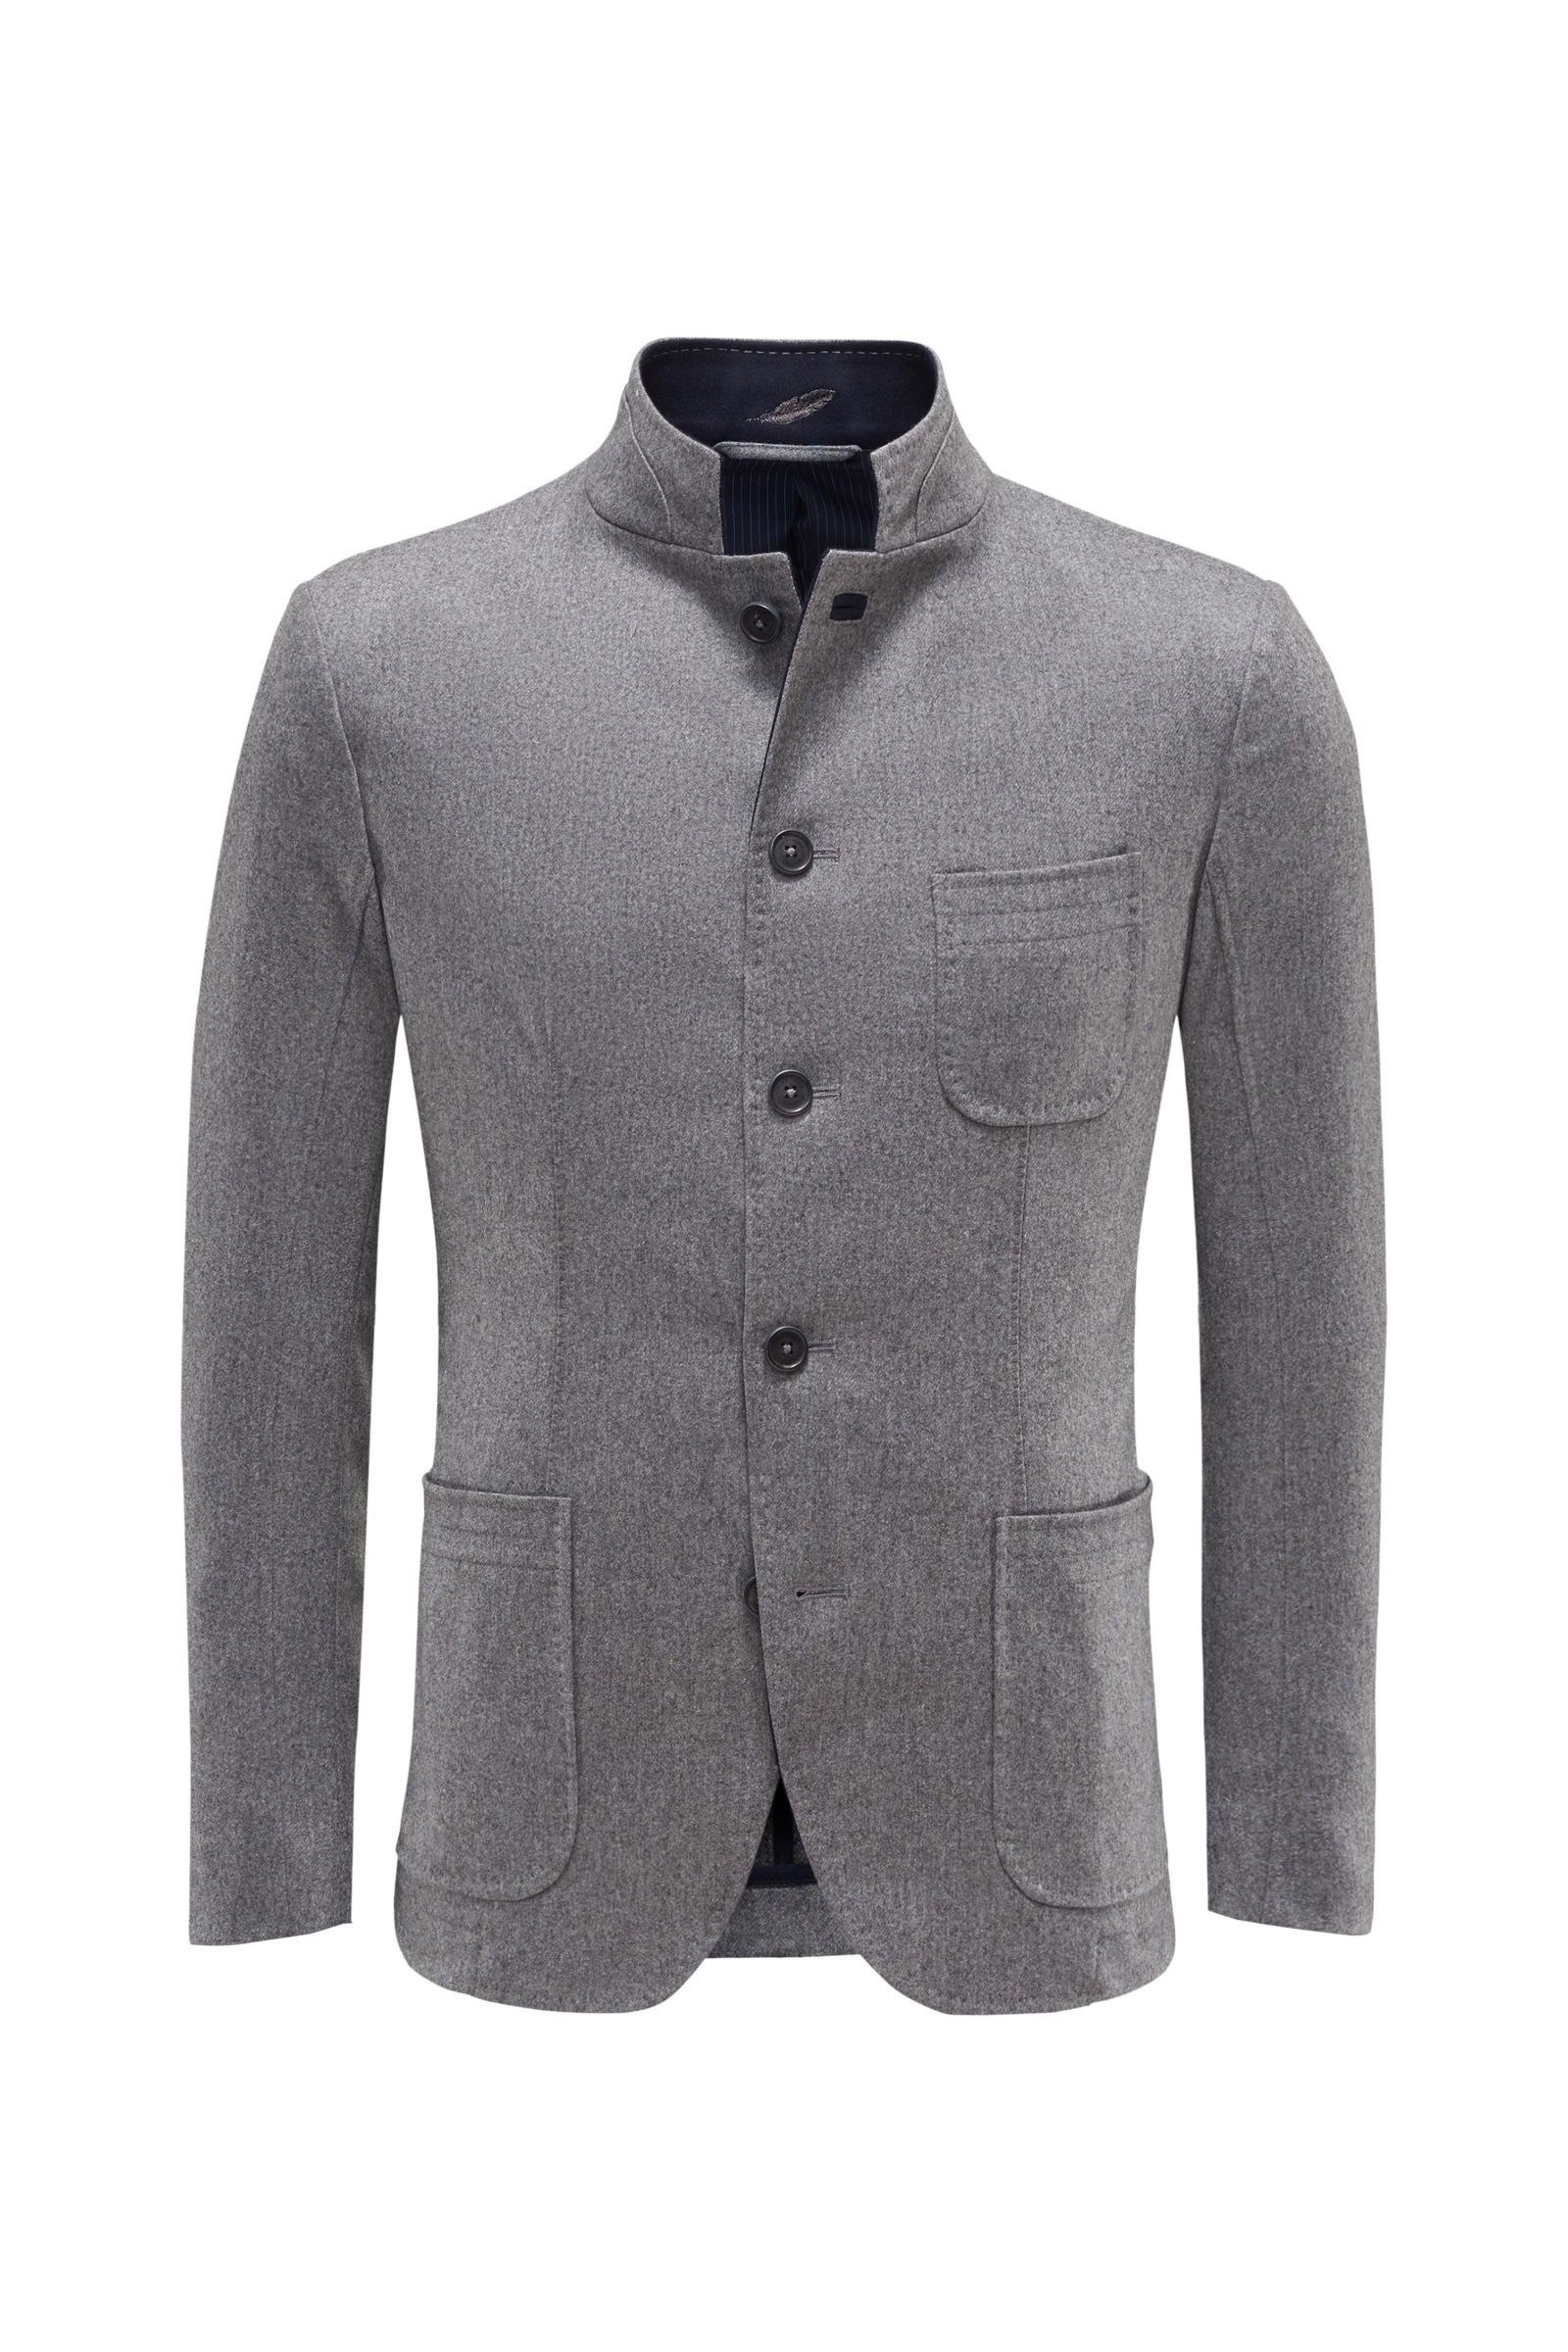 Loden jacket grey